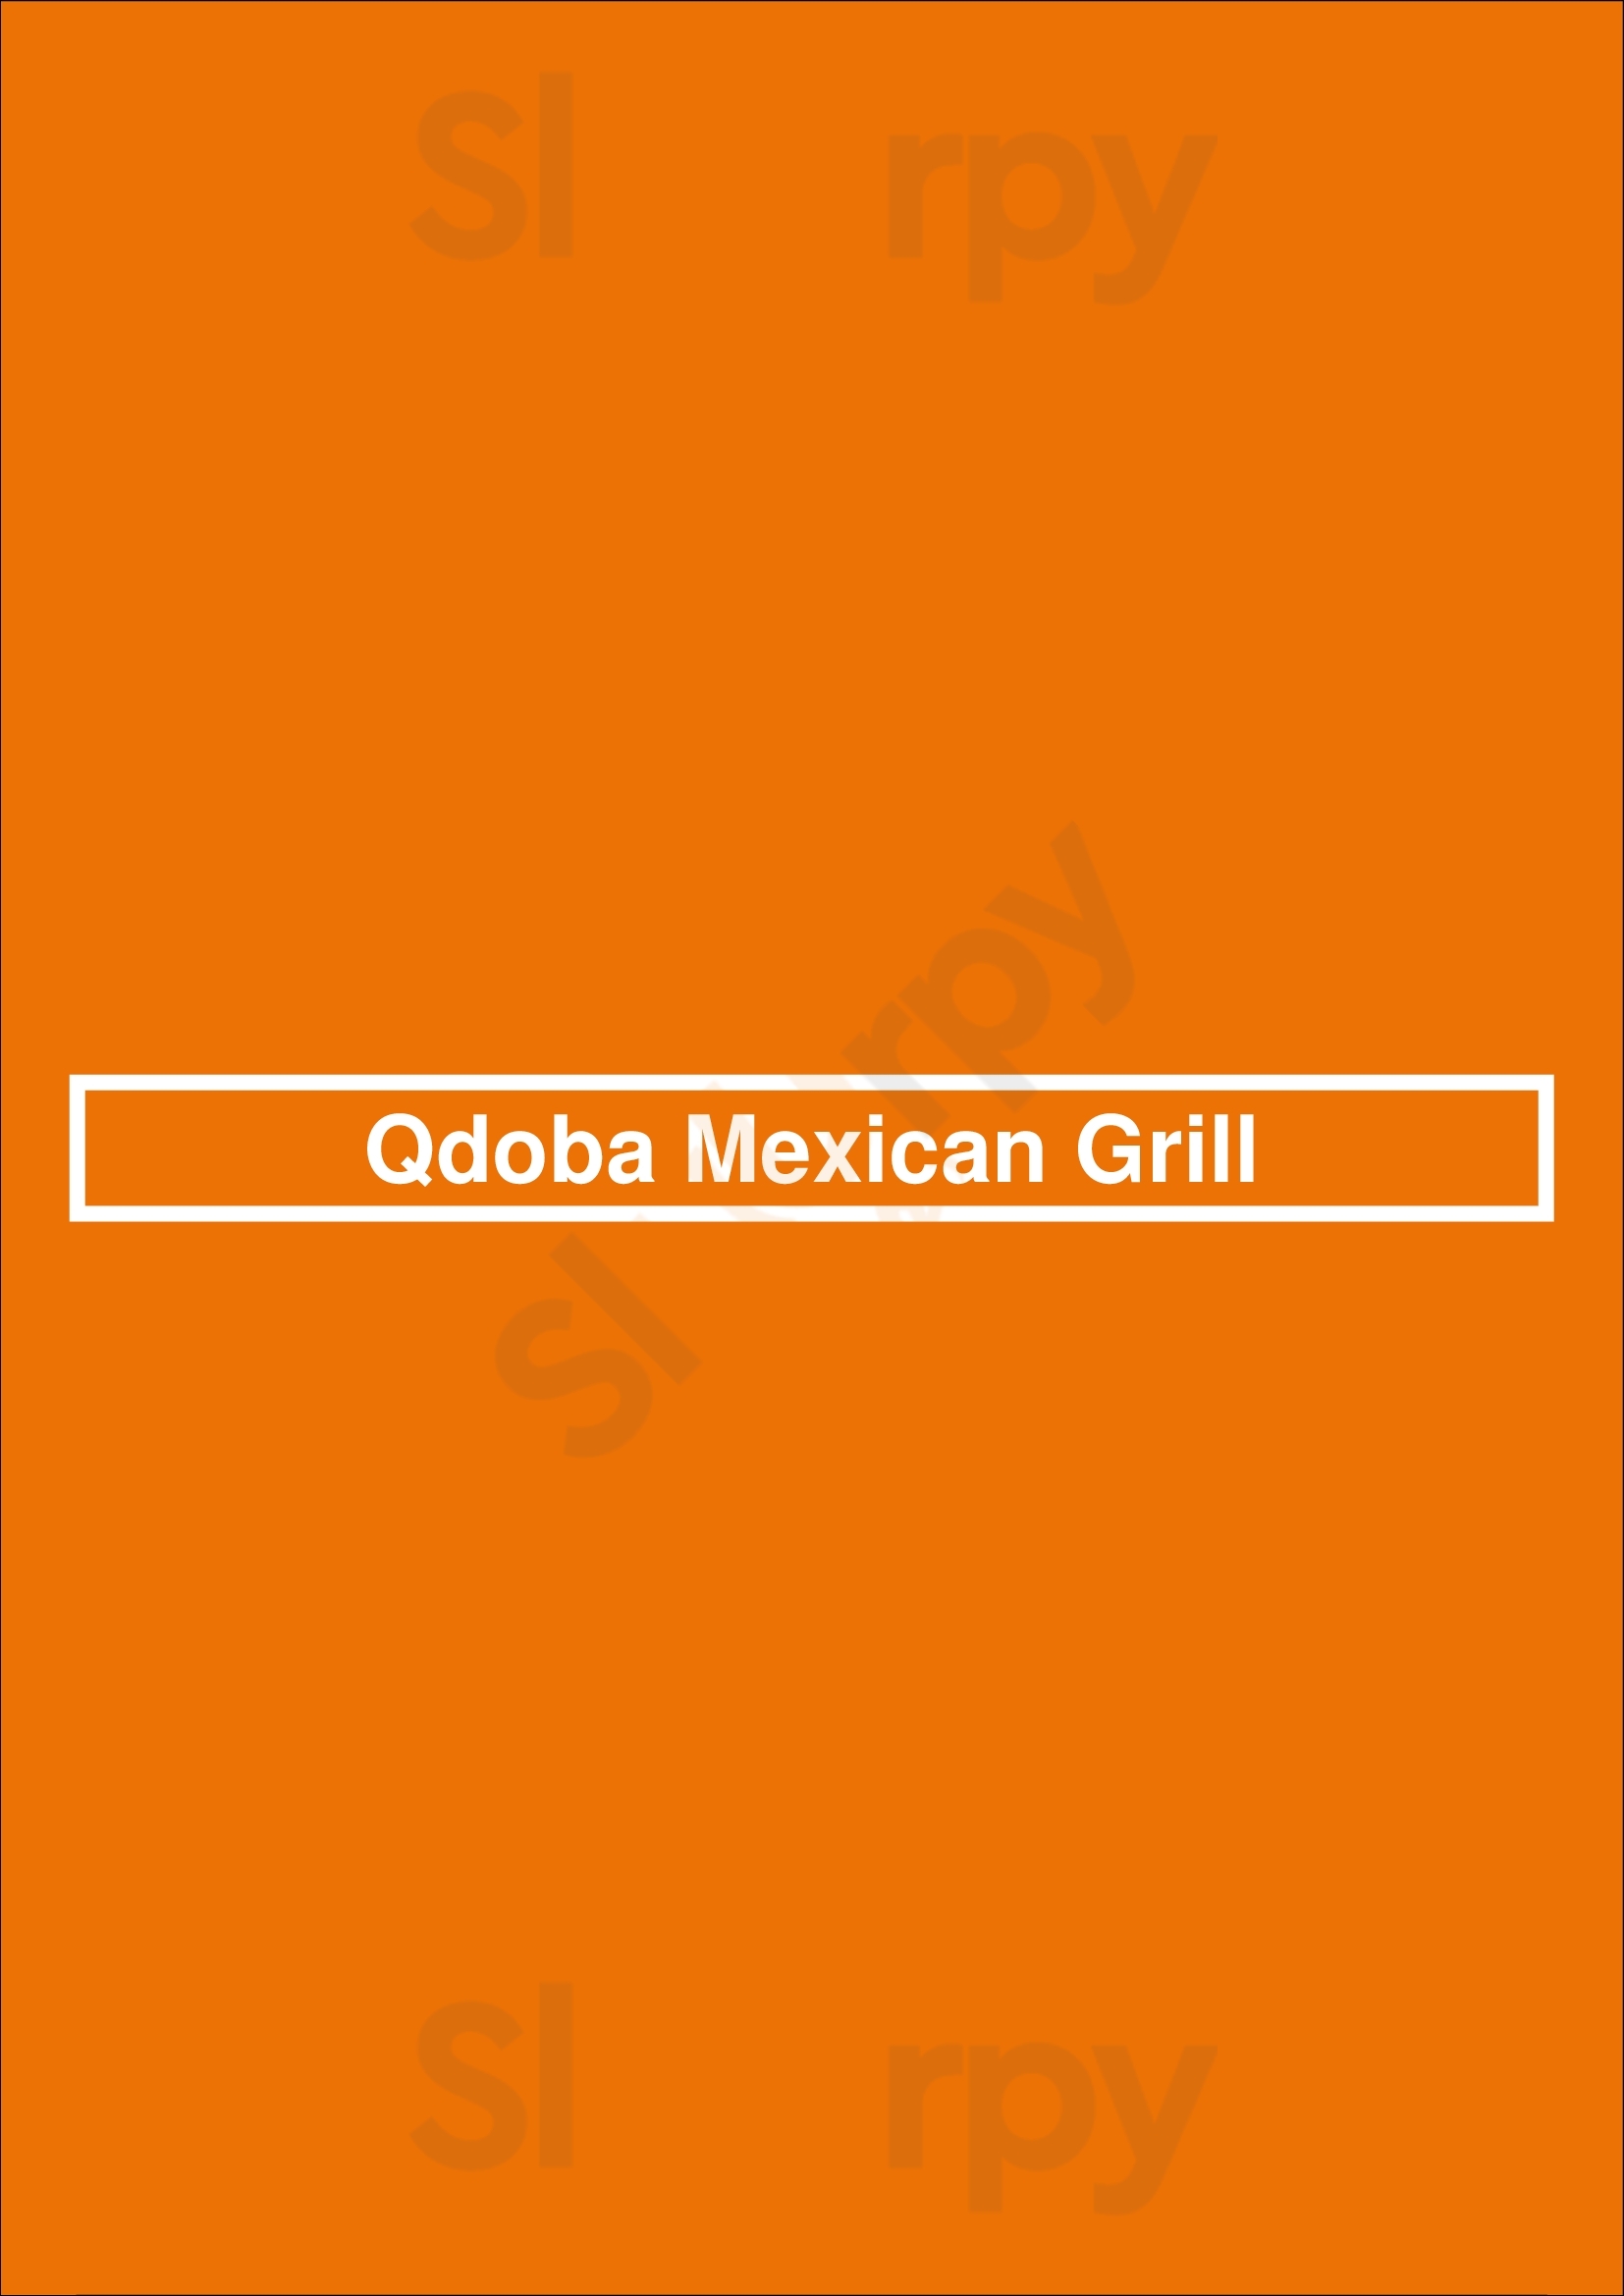 Qdoba Mexican Grill Reno Menu - 1